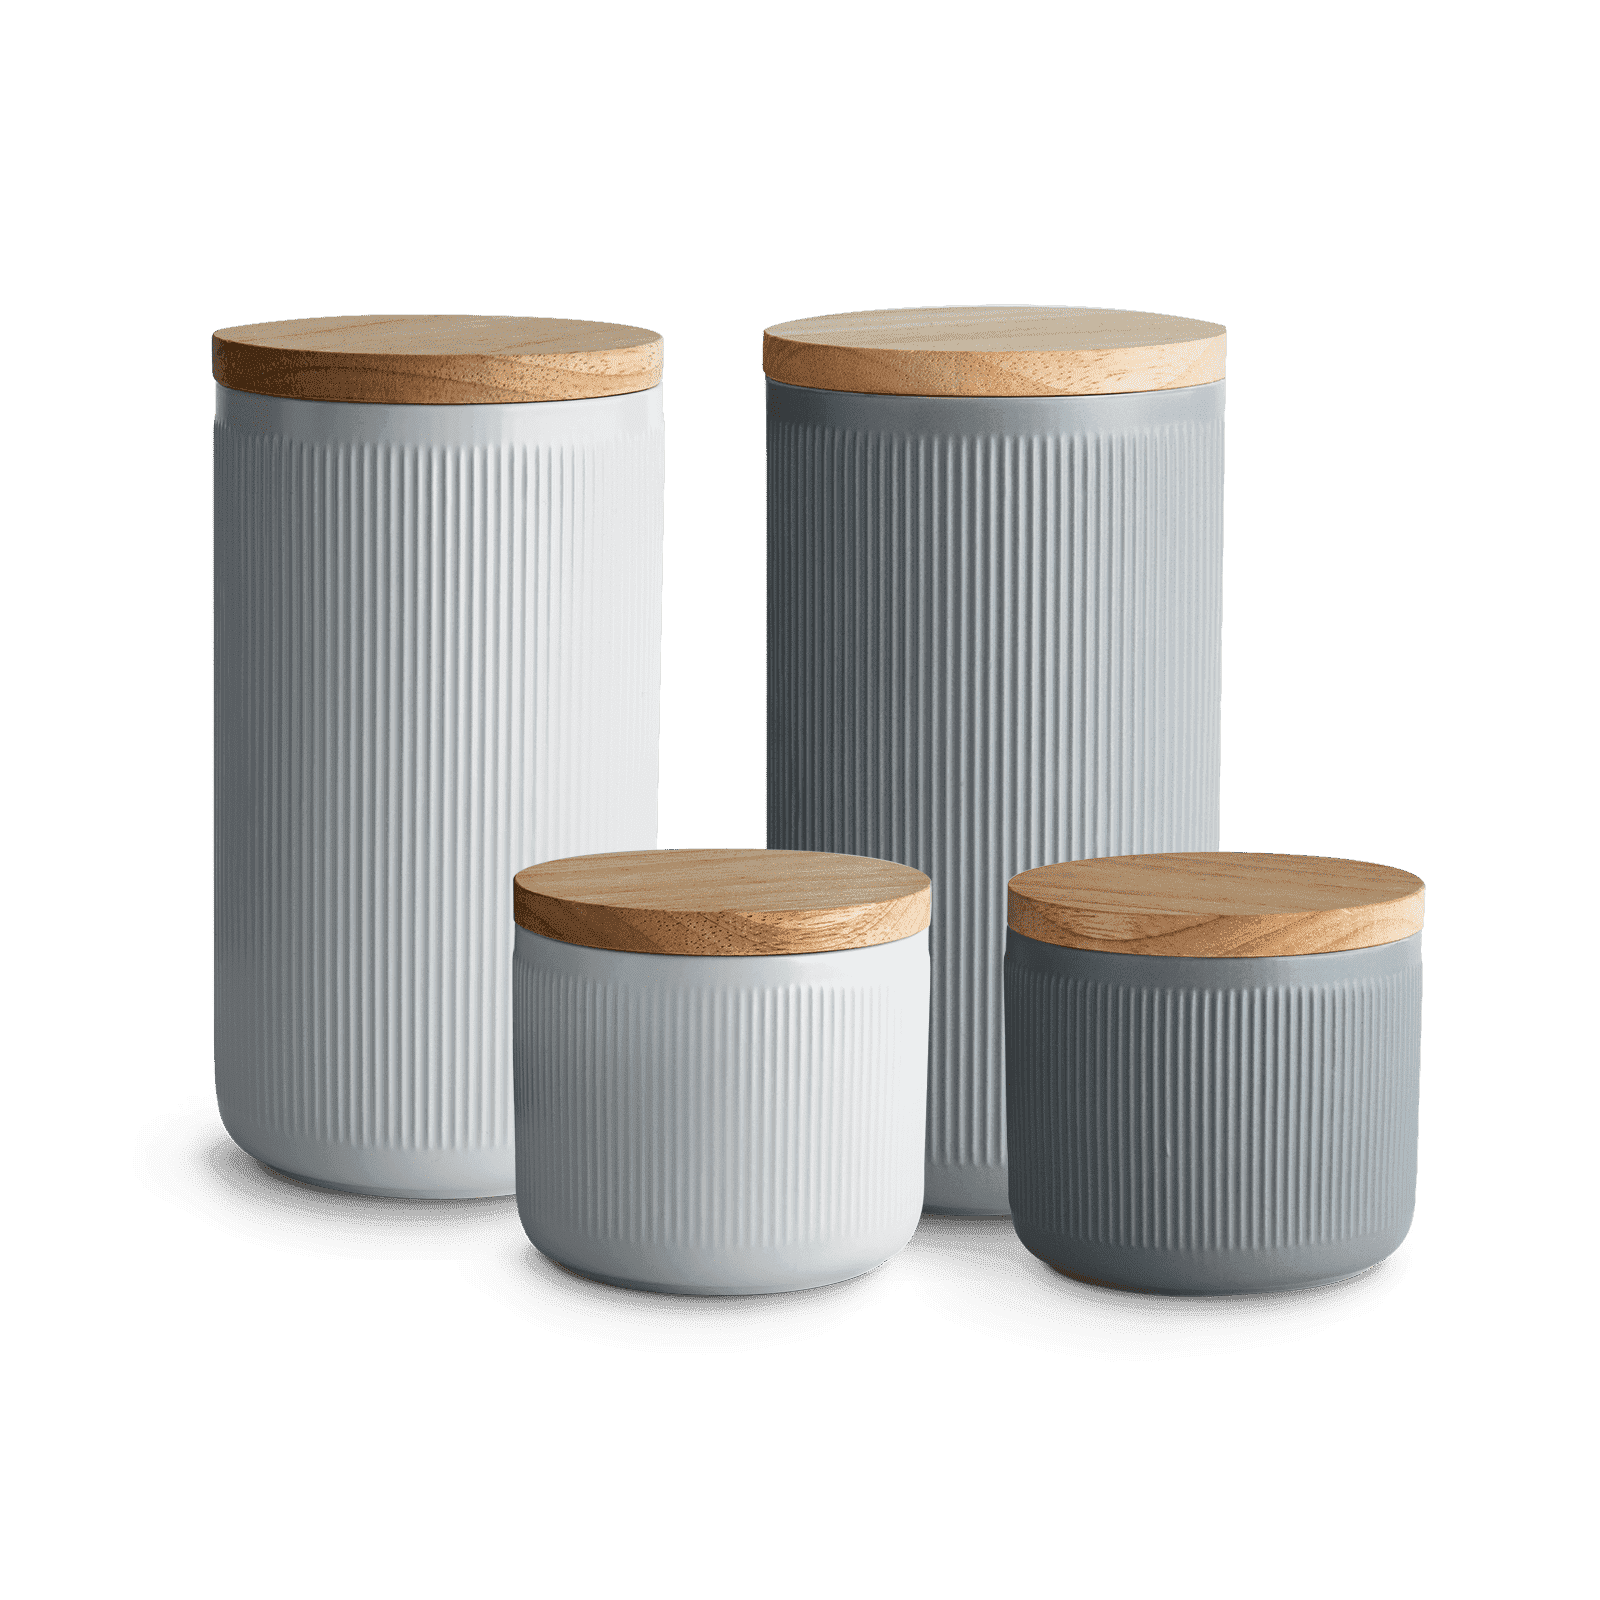 Keramik Vorratsdosen Stripes 4er Set - Hellgrau, Dunkelgrau